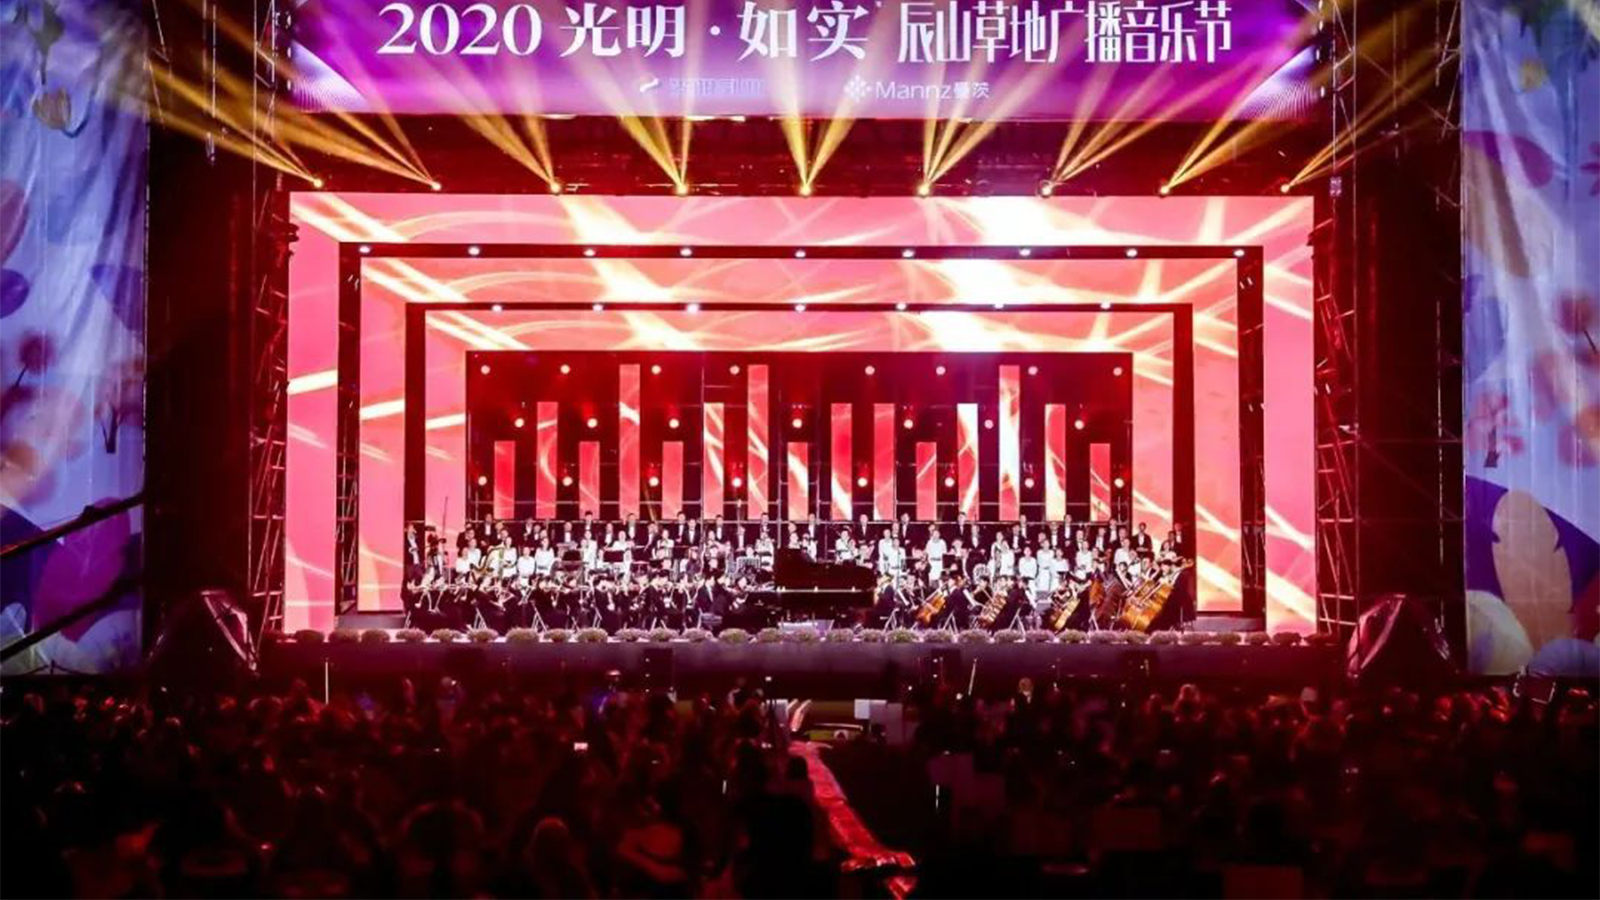 2020 辰山草地广播音乐节